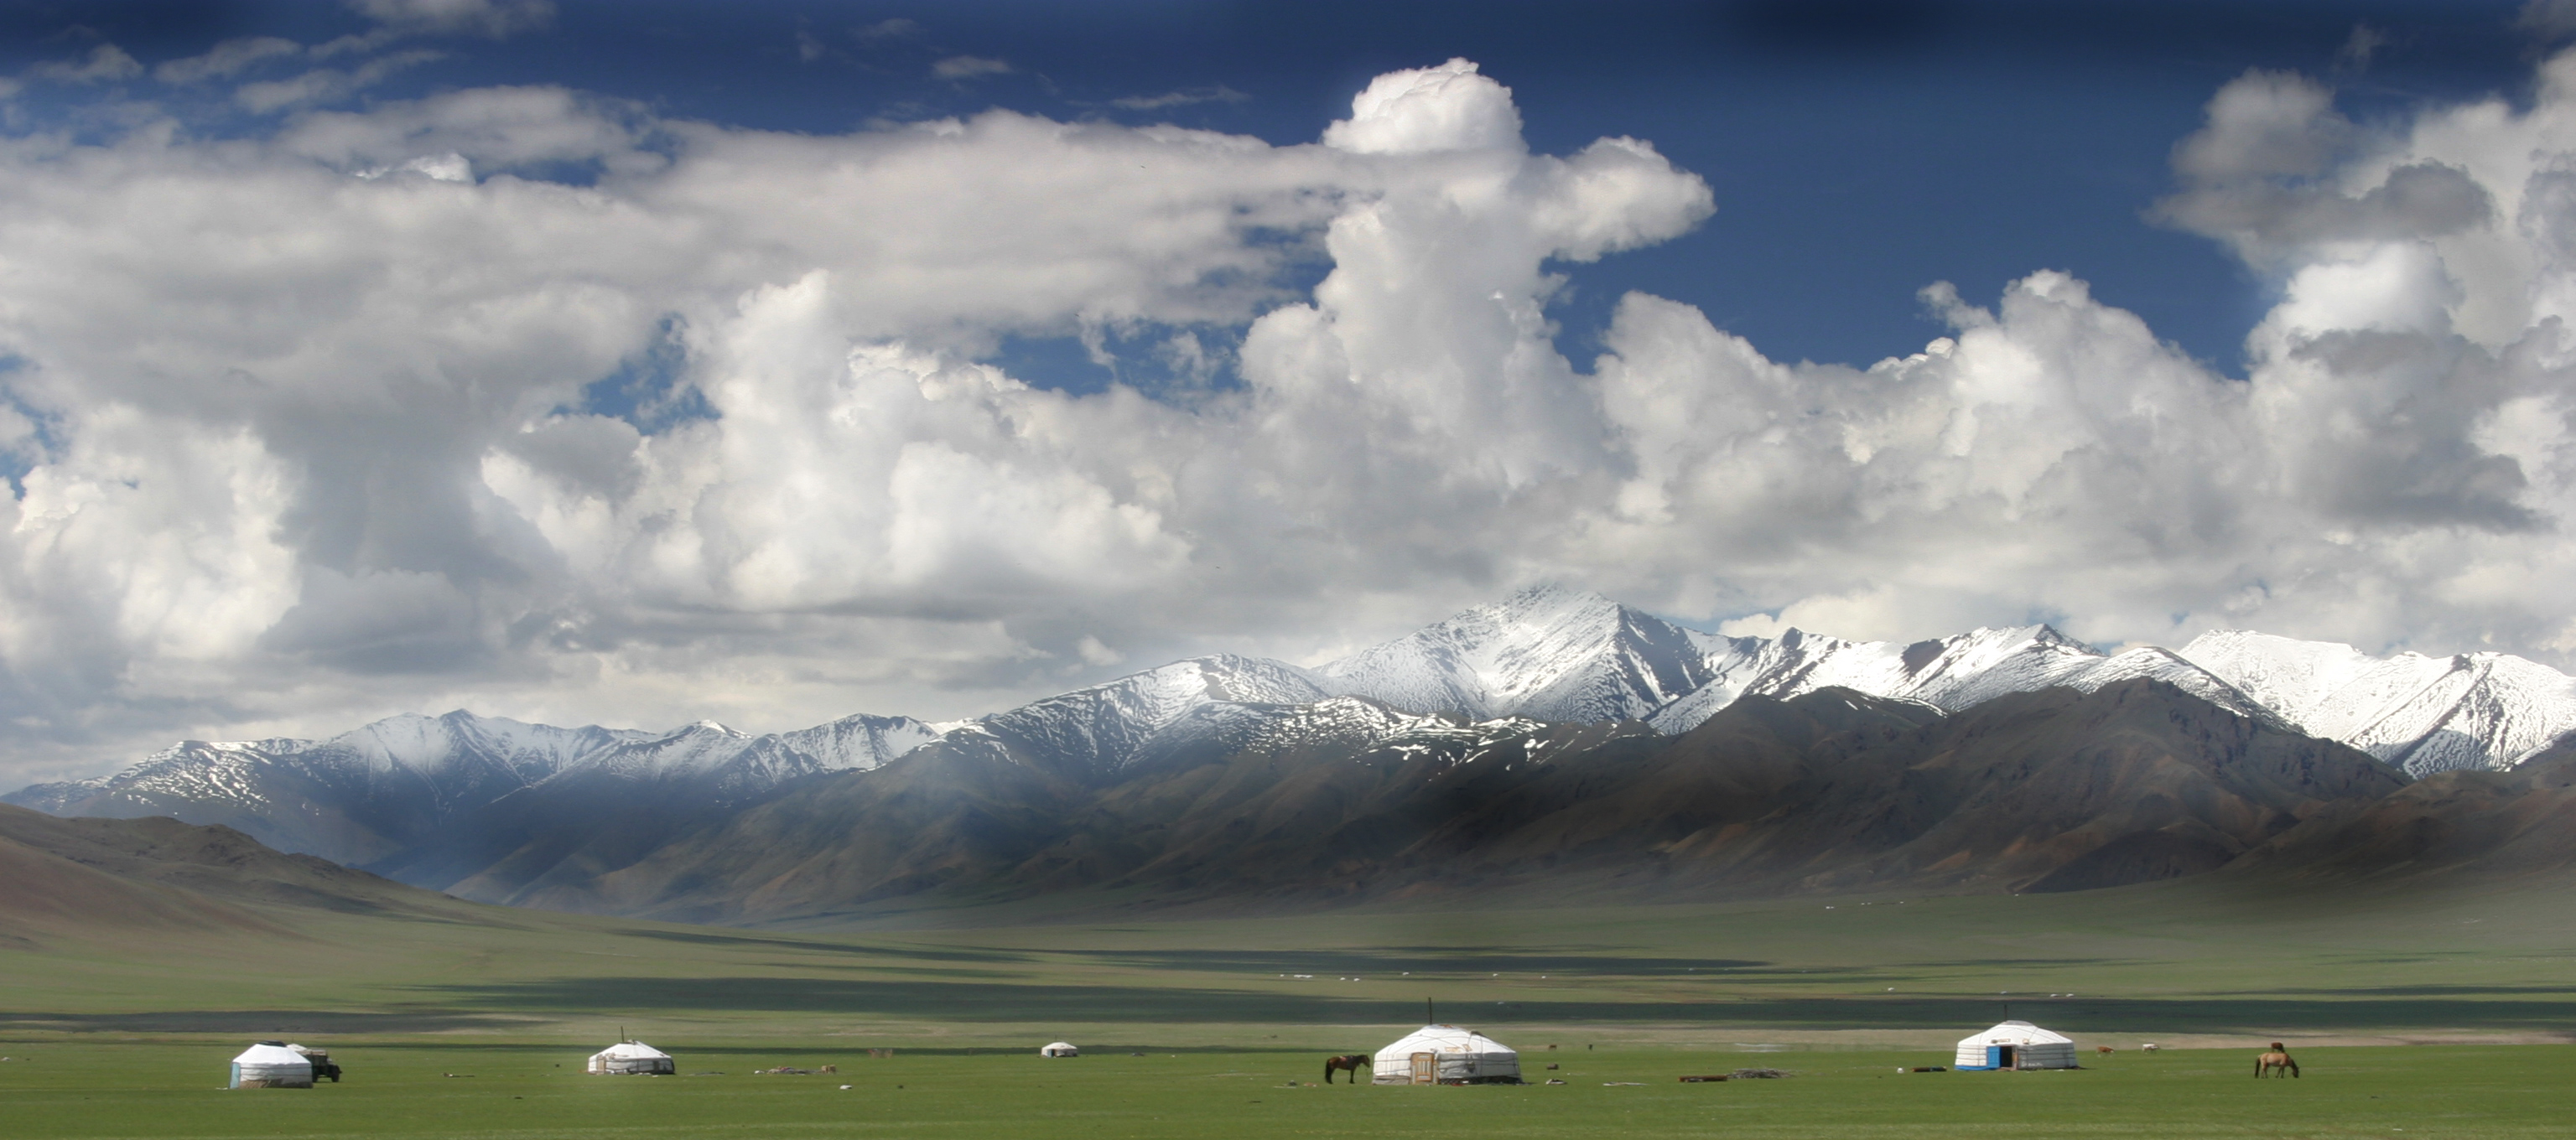 Alcune yurte su una pianura verdeggiante con una catena montuosa sullo sfondo.